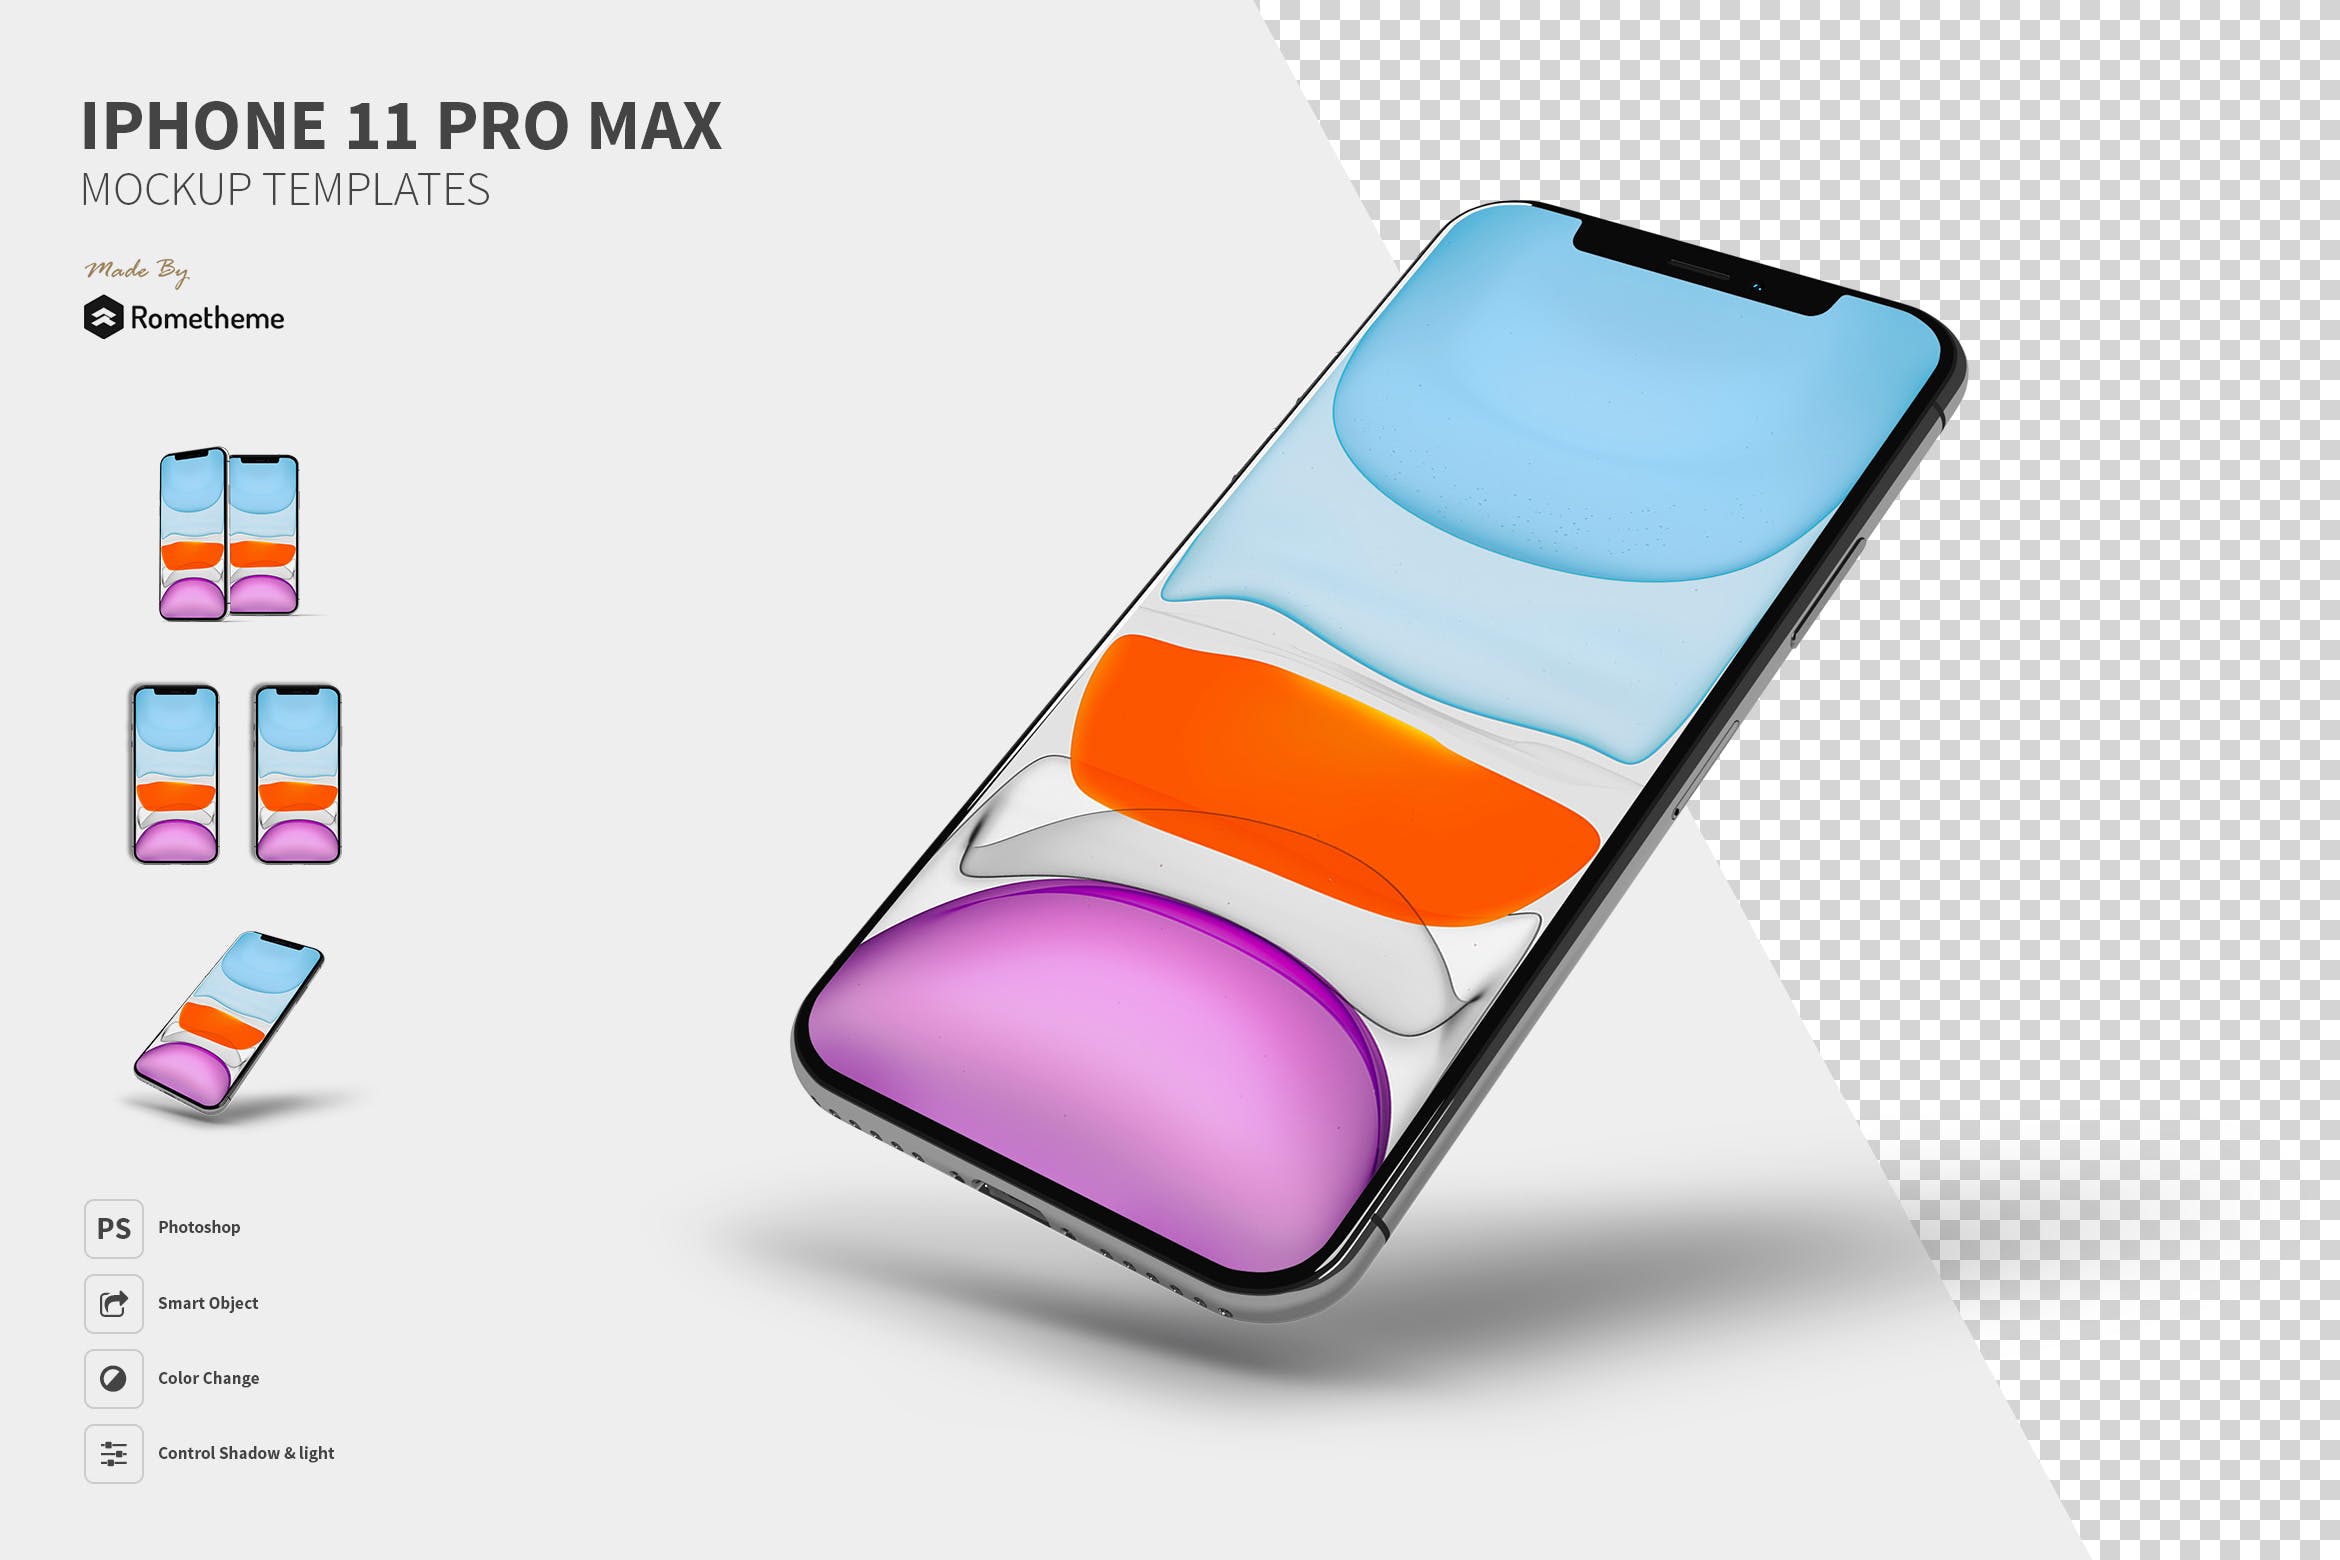 2019苹果旗舰手机iPhone 11 Pro Max蚂蚁素材精选样机模板 iPhone 11 Pro Max Mockups YR插图